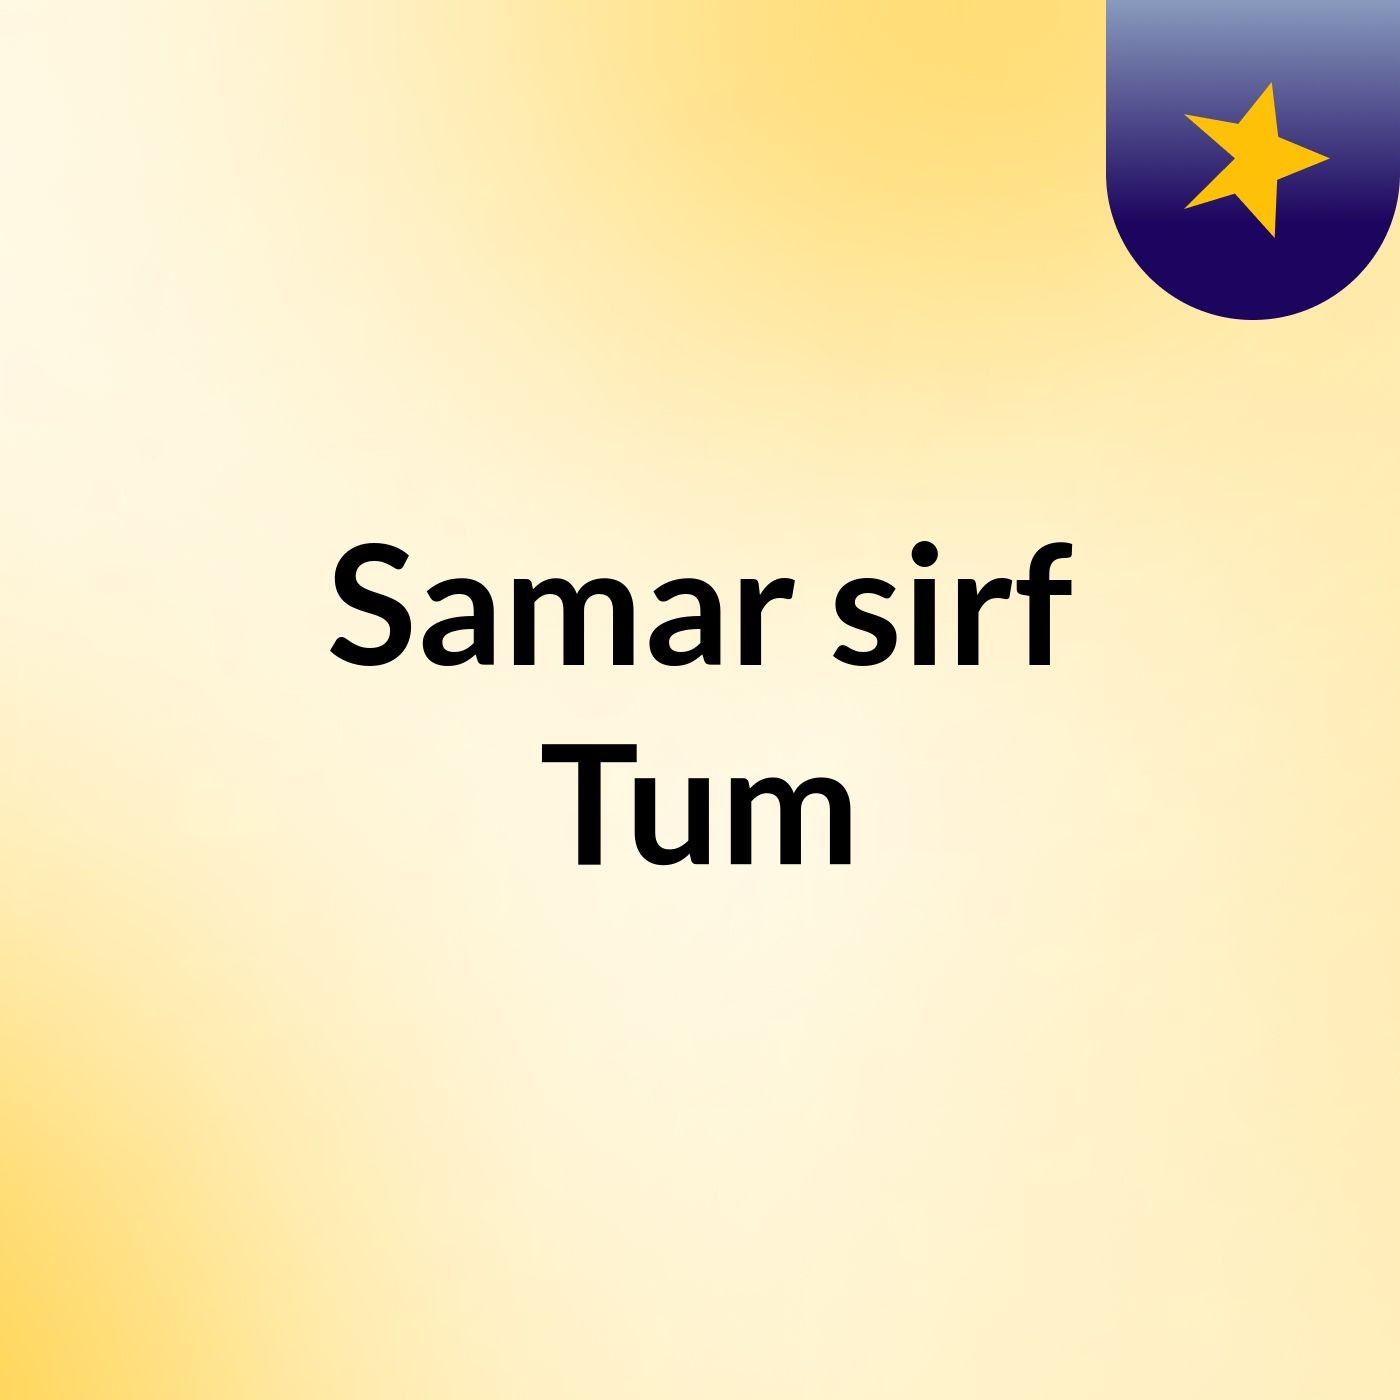 Episode 13 - Samar sirf Tum